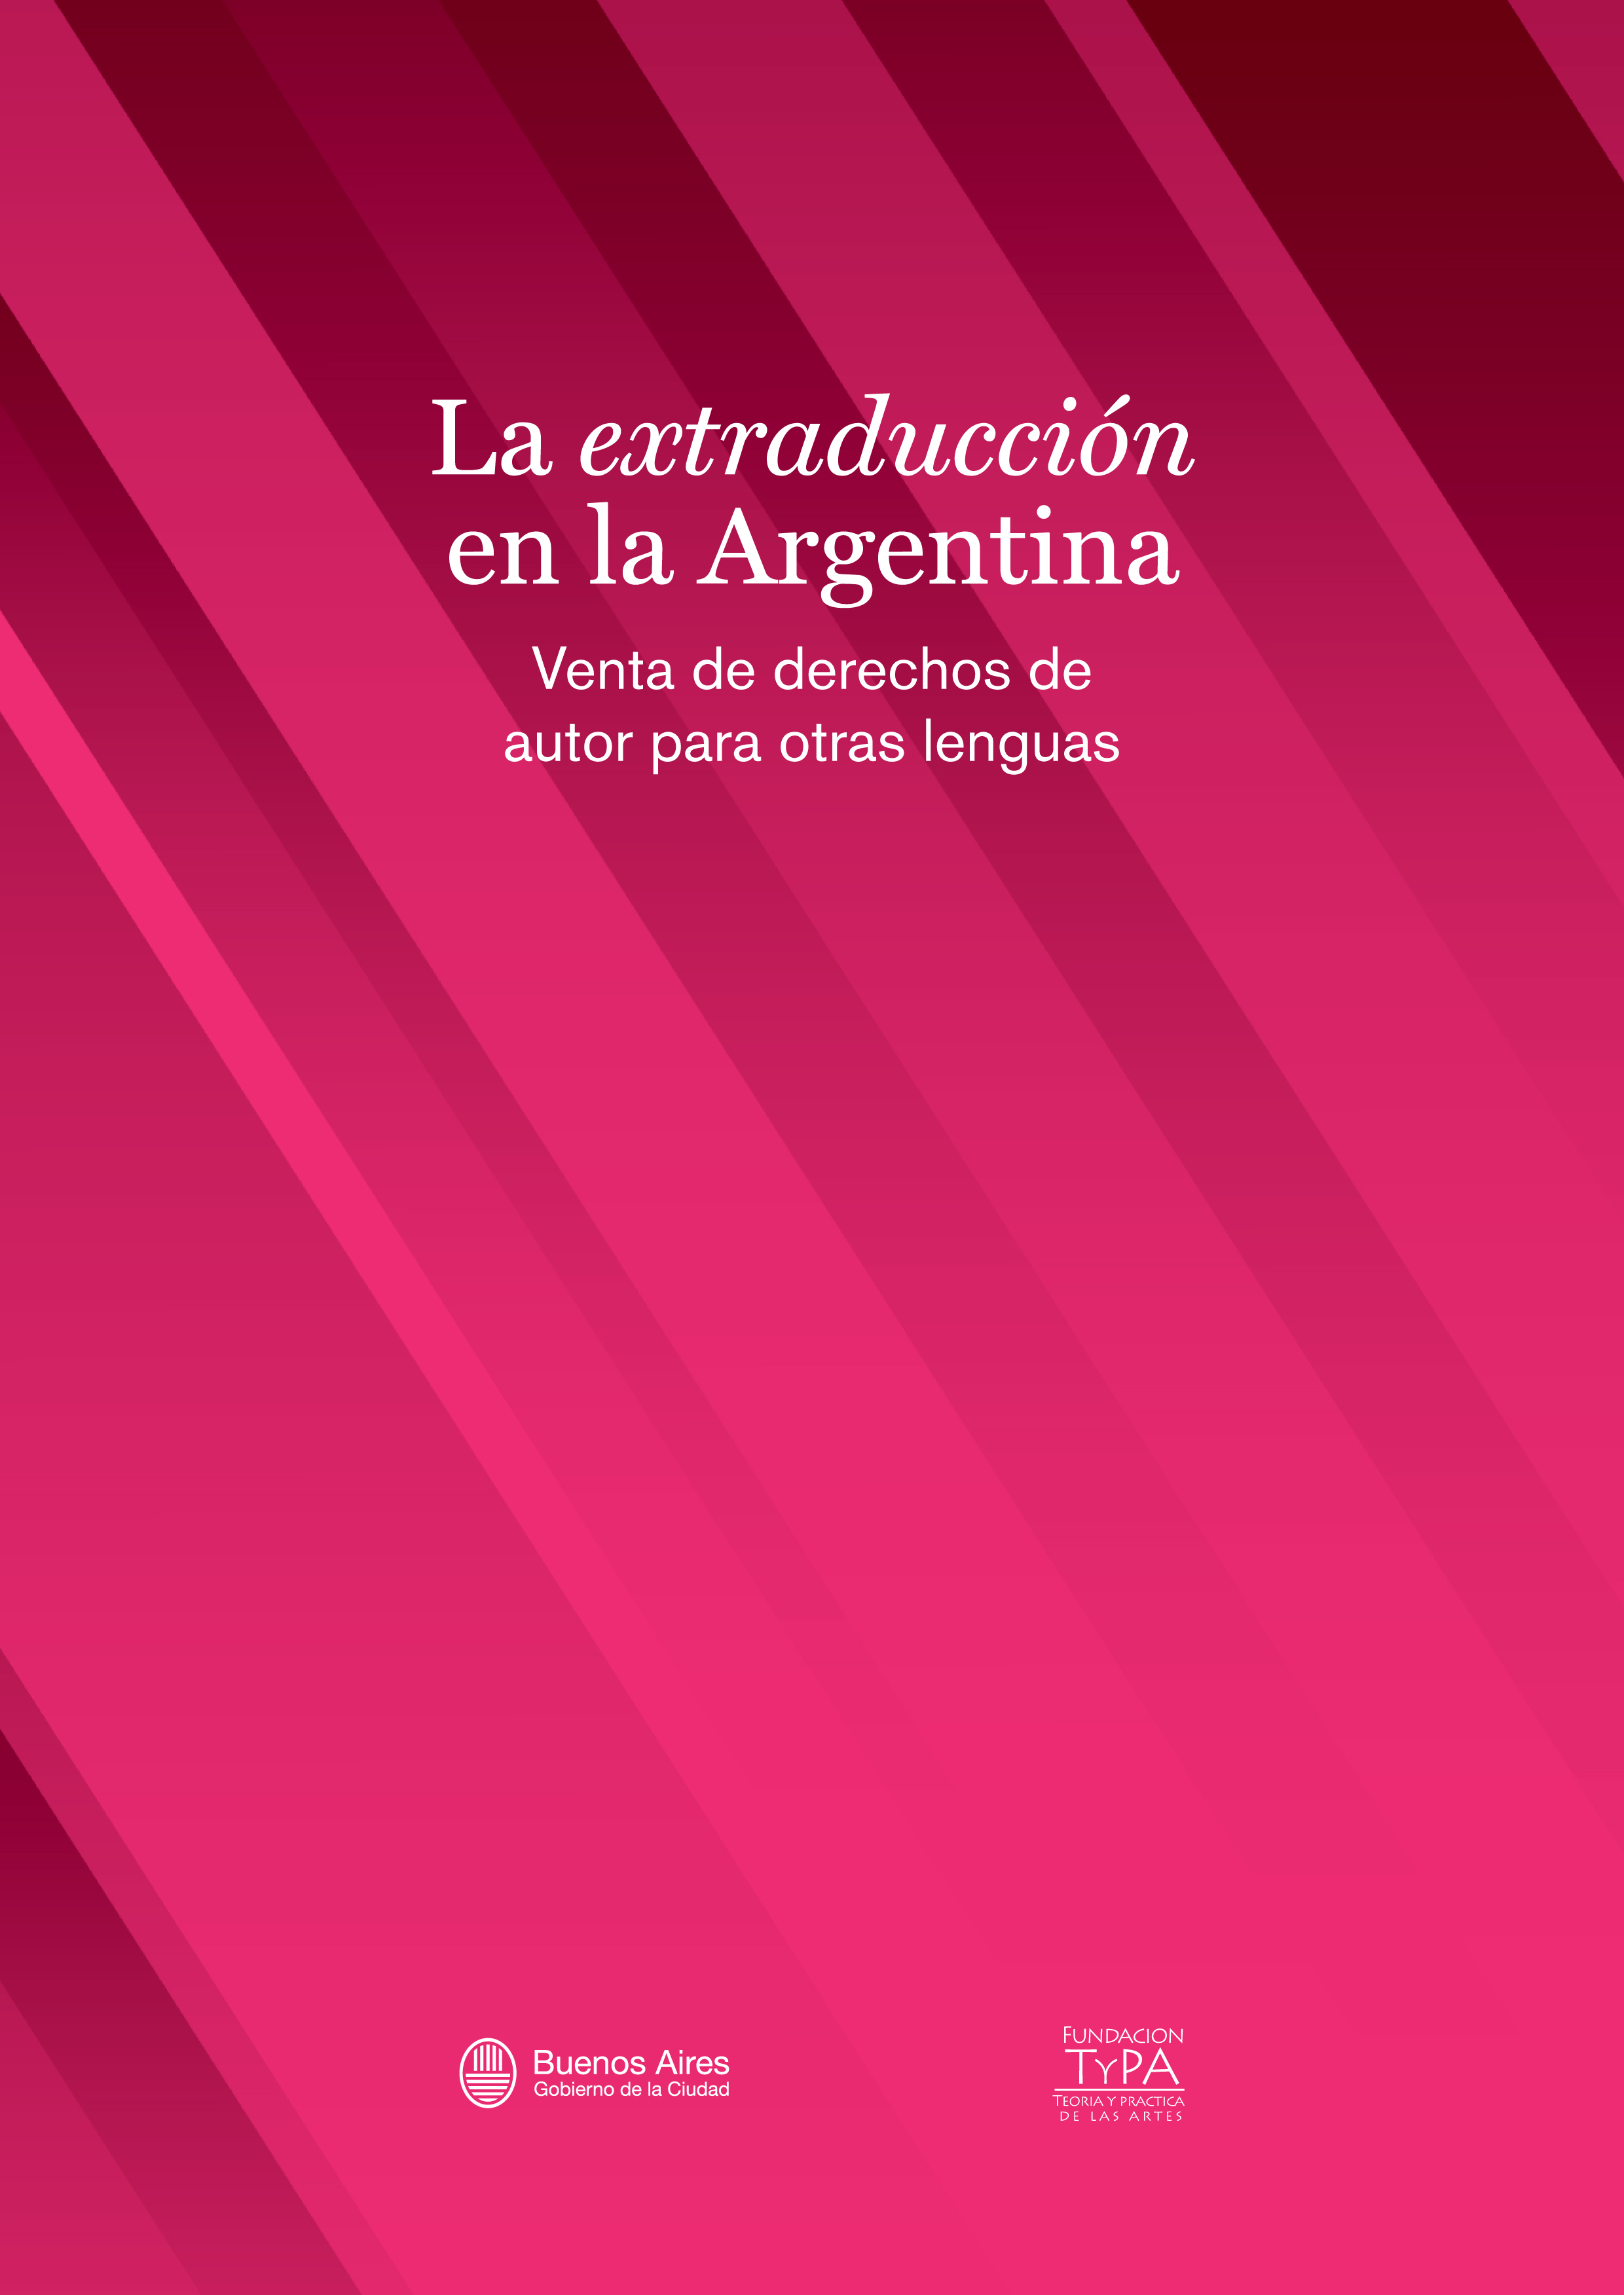 Libro La extraducción de autores argentinos